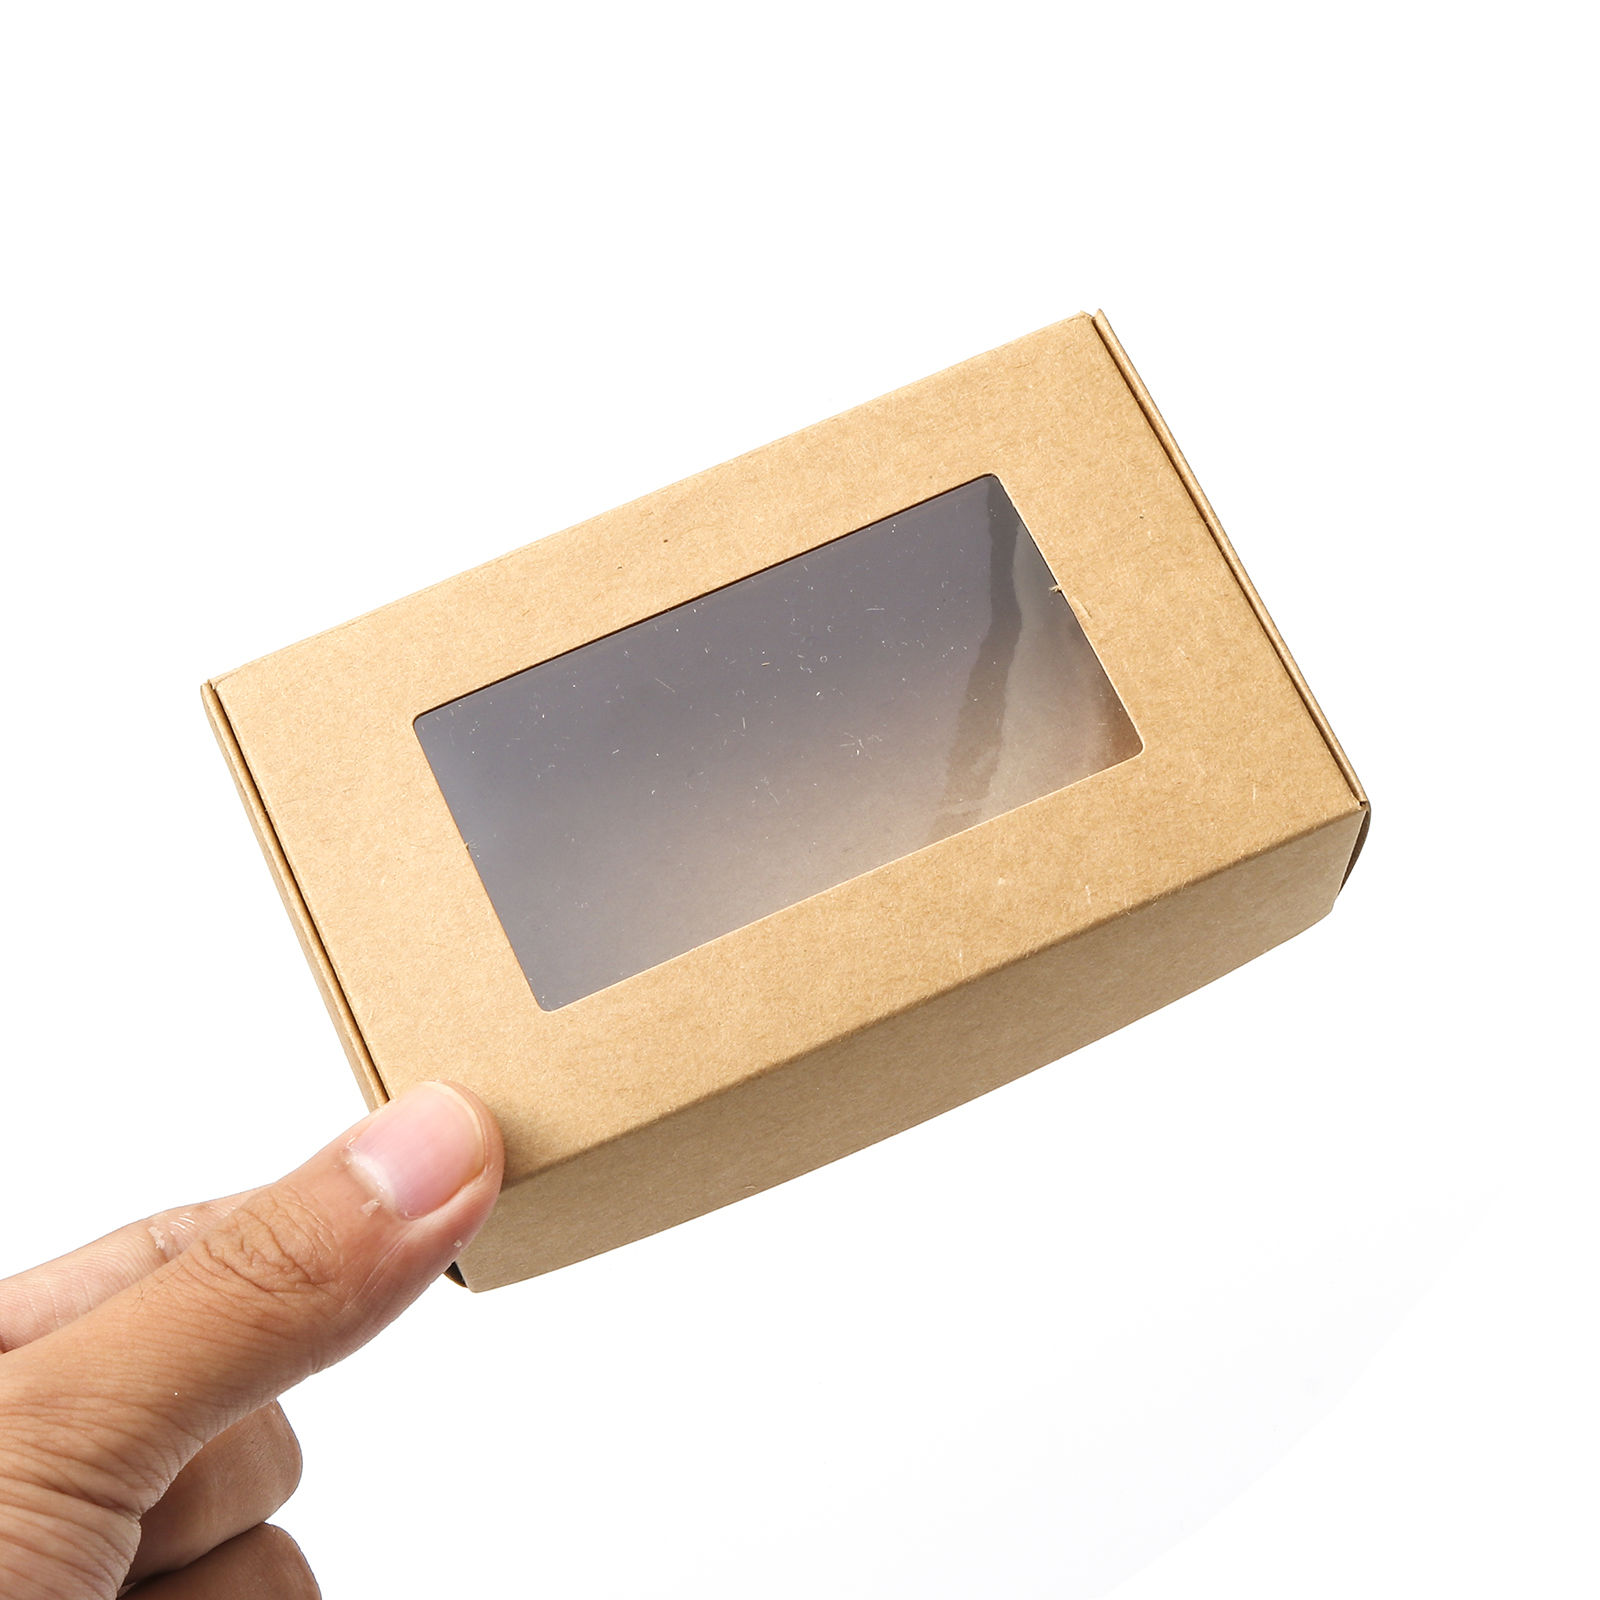 Bild von Papier Schmuck Versand Kartons Quadrat Kraftpapier 6.5cm x 6.5cm x 3cm , 5 Stück